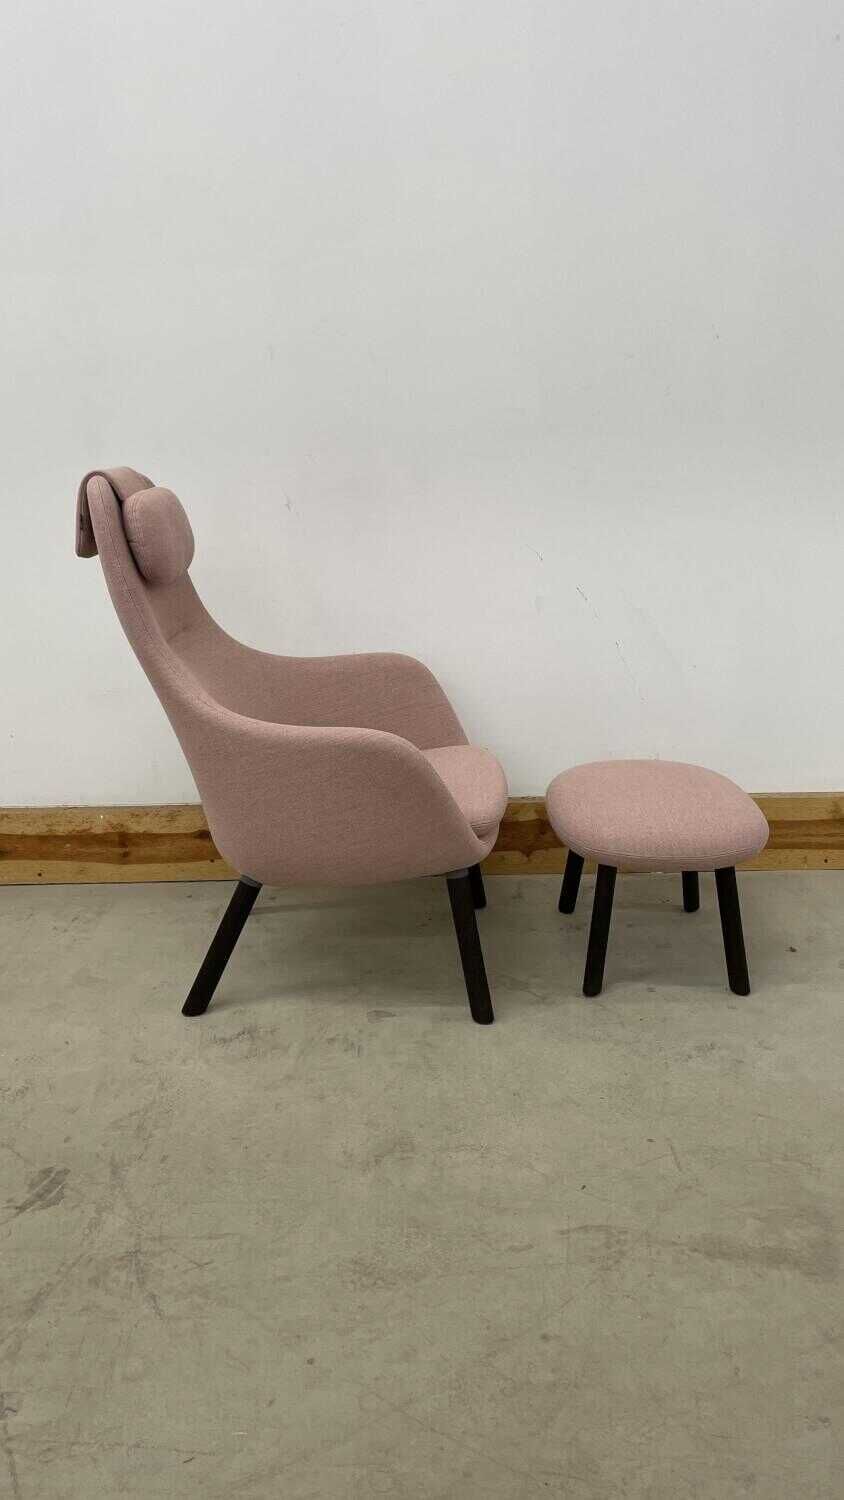 Sessel HAL Lounge Chair Stoff Dumet Zartrose Beige und Ottoman